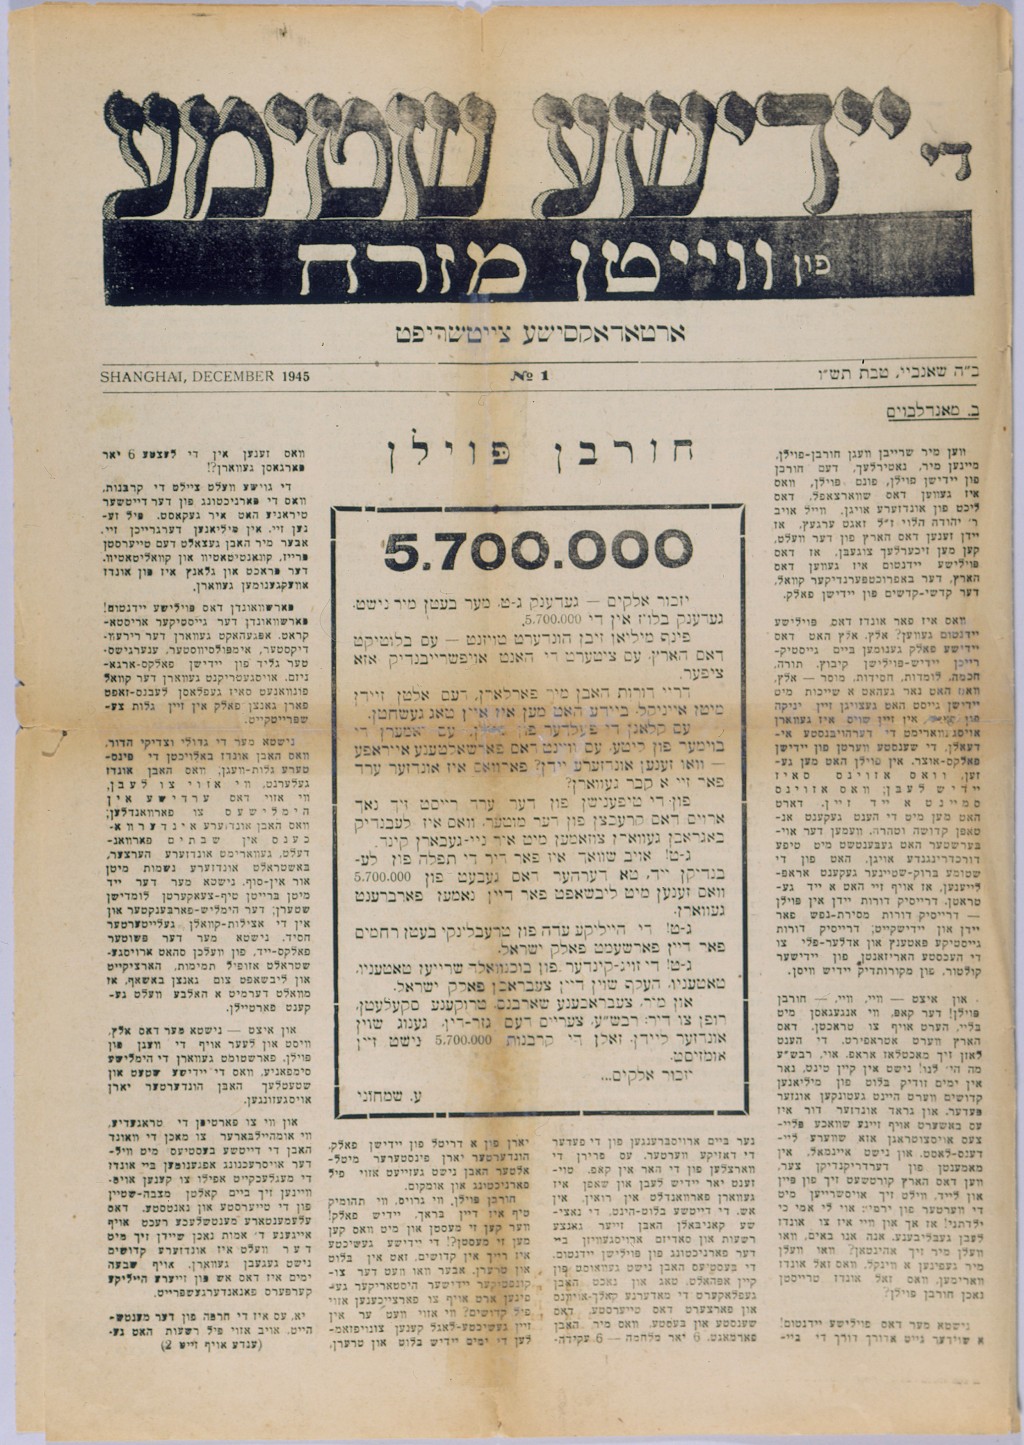 Yiddishe Shtime, December 1945 [LCID: 2002ufpi]